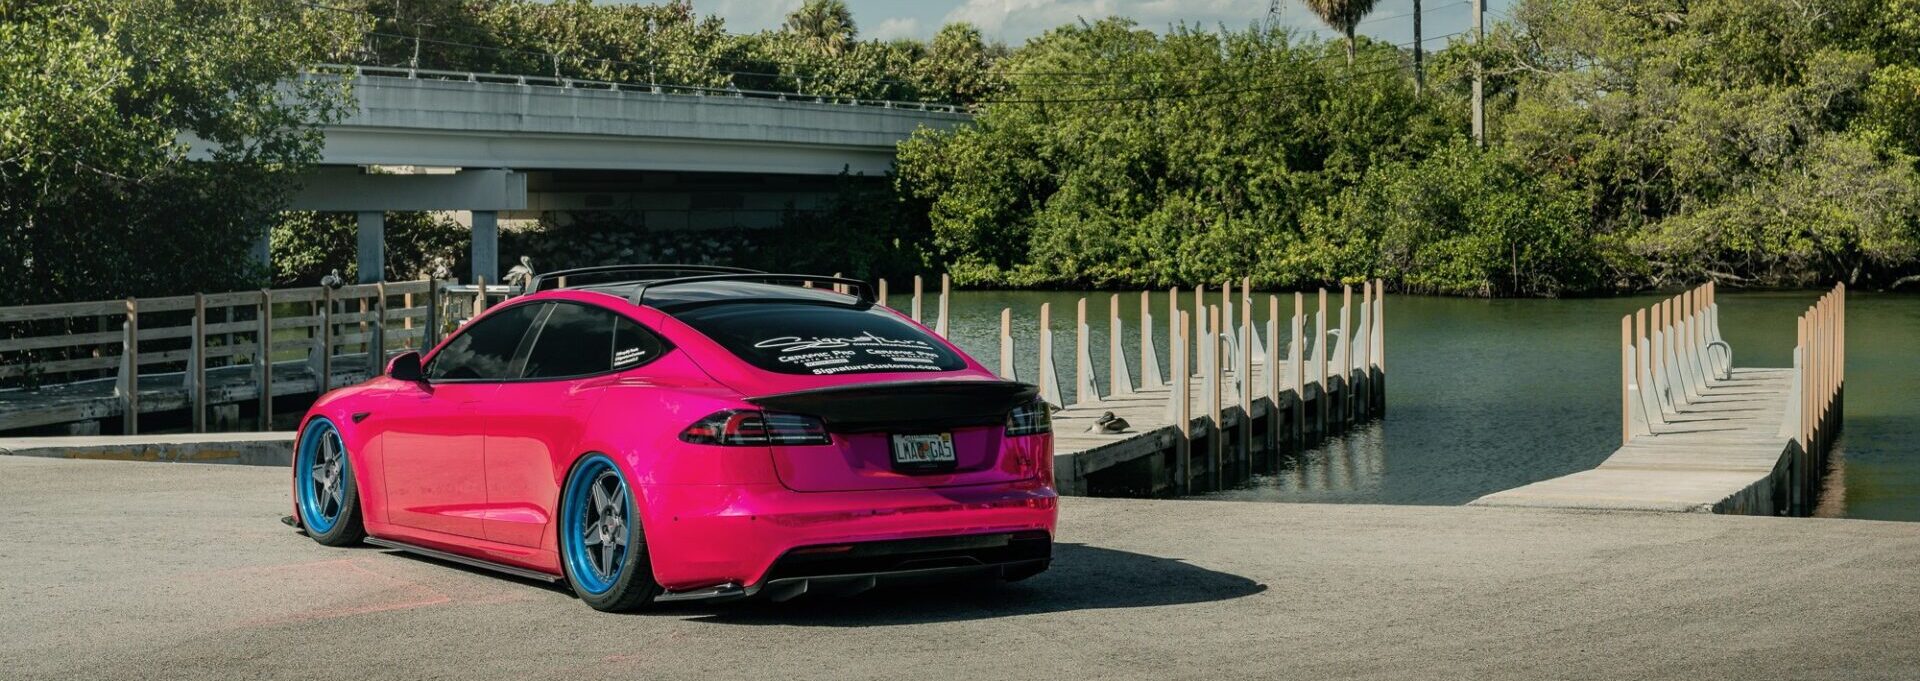 Tesla Model S розовее, чем сумочка девочки-подростка, издевается над бензиновыми автомобилями